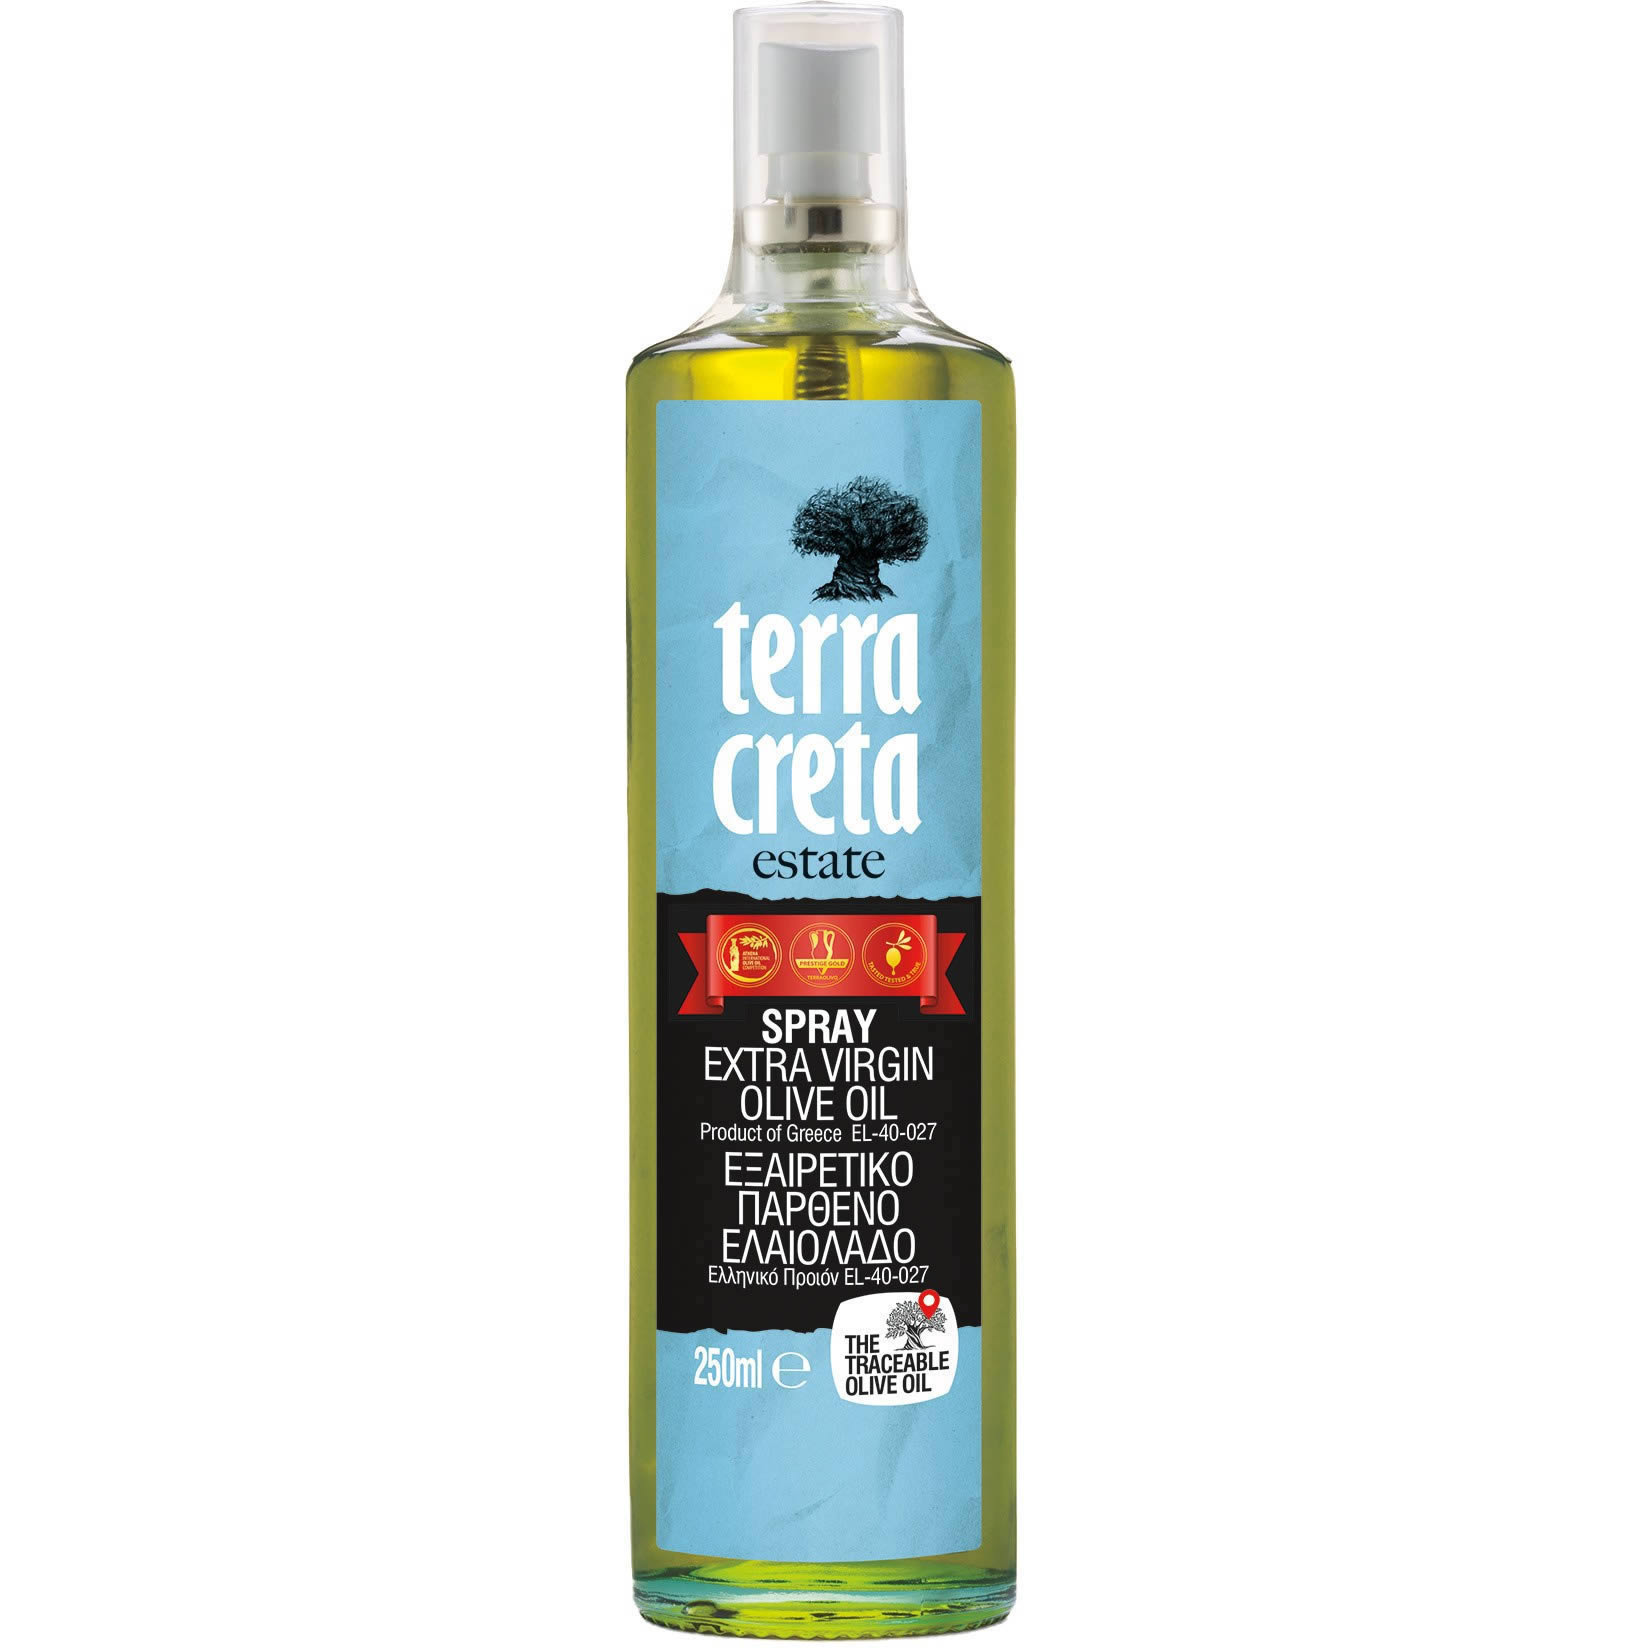 Terra Creta - Extra natives Olivenöl "estate" Spray 250 ml